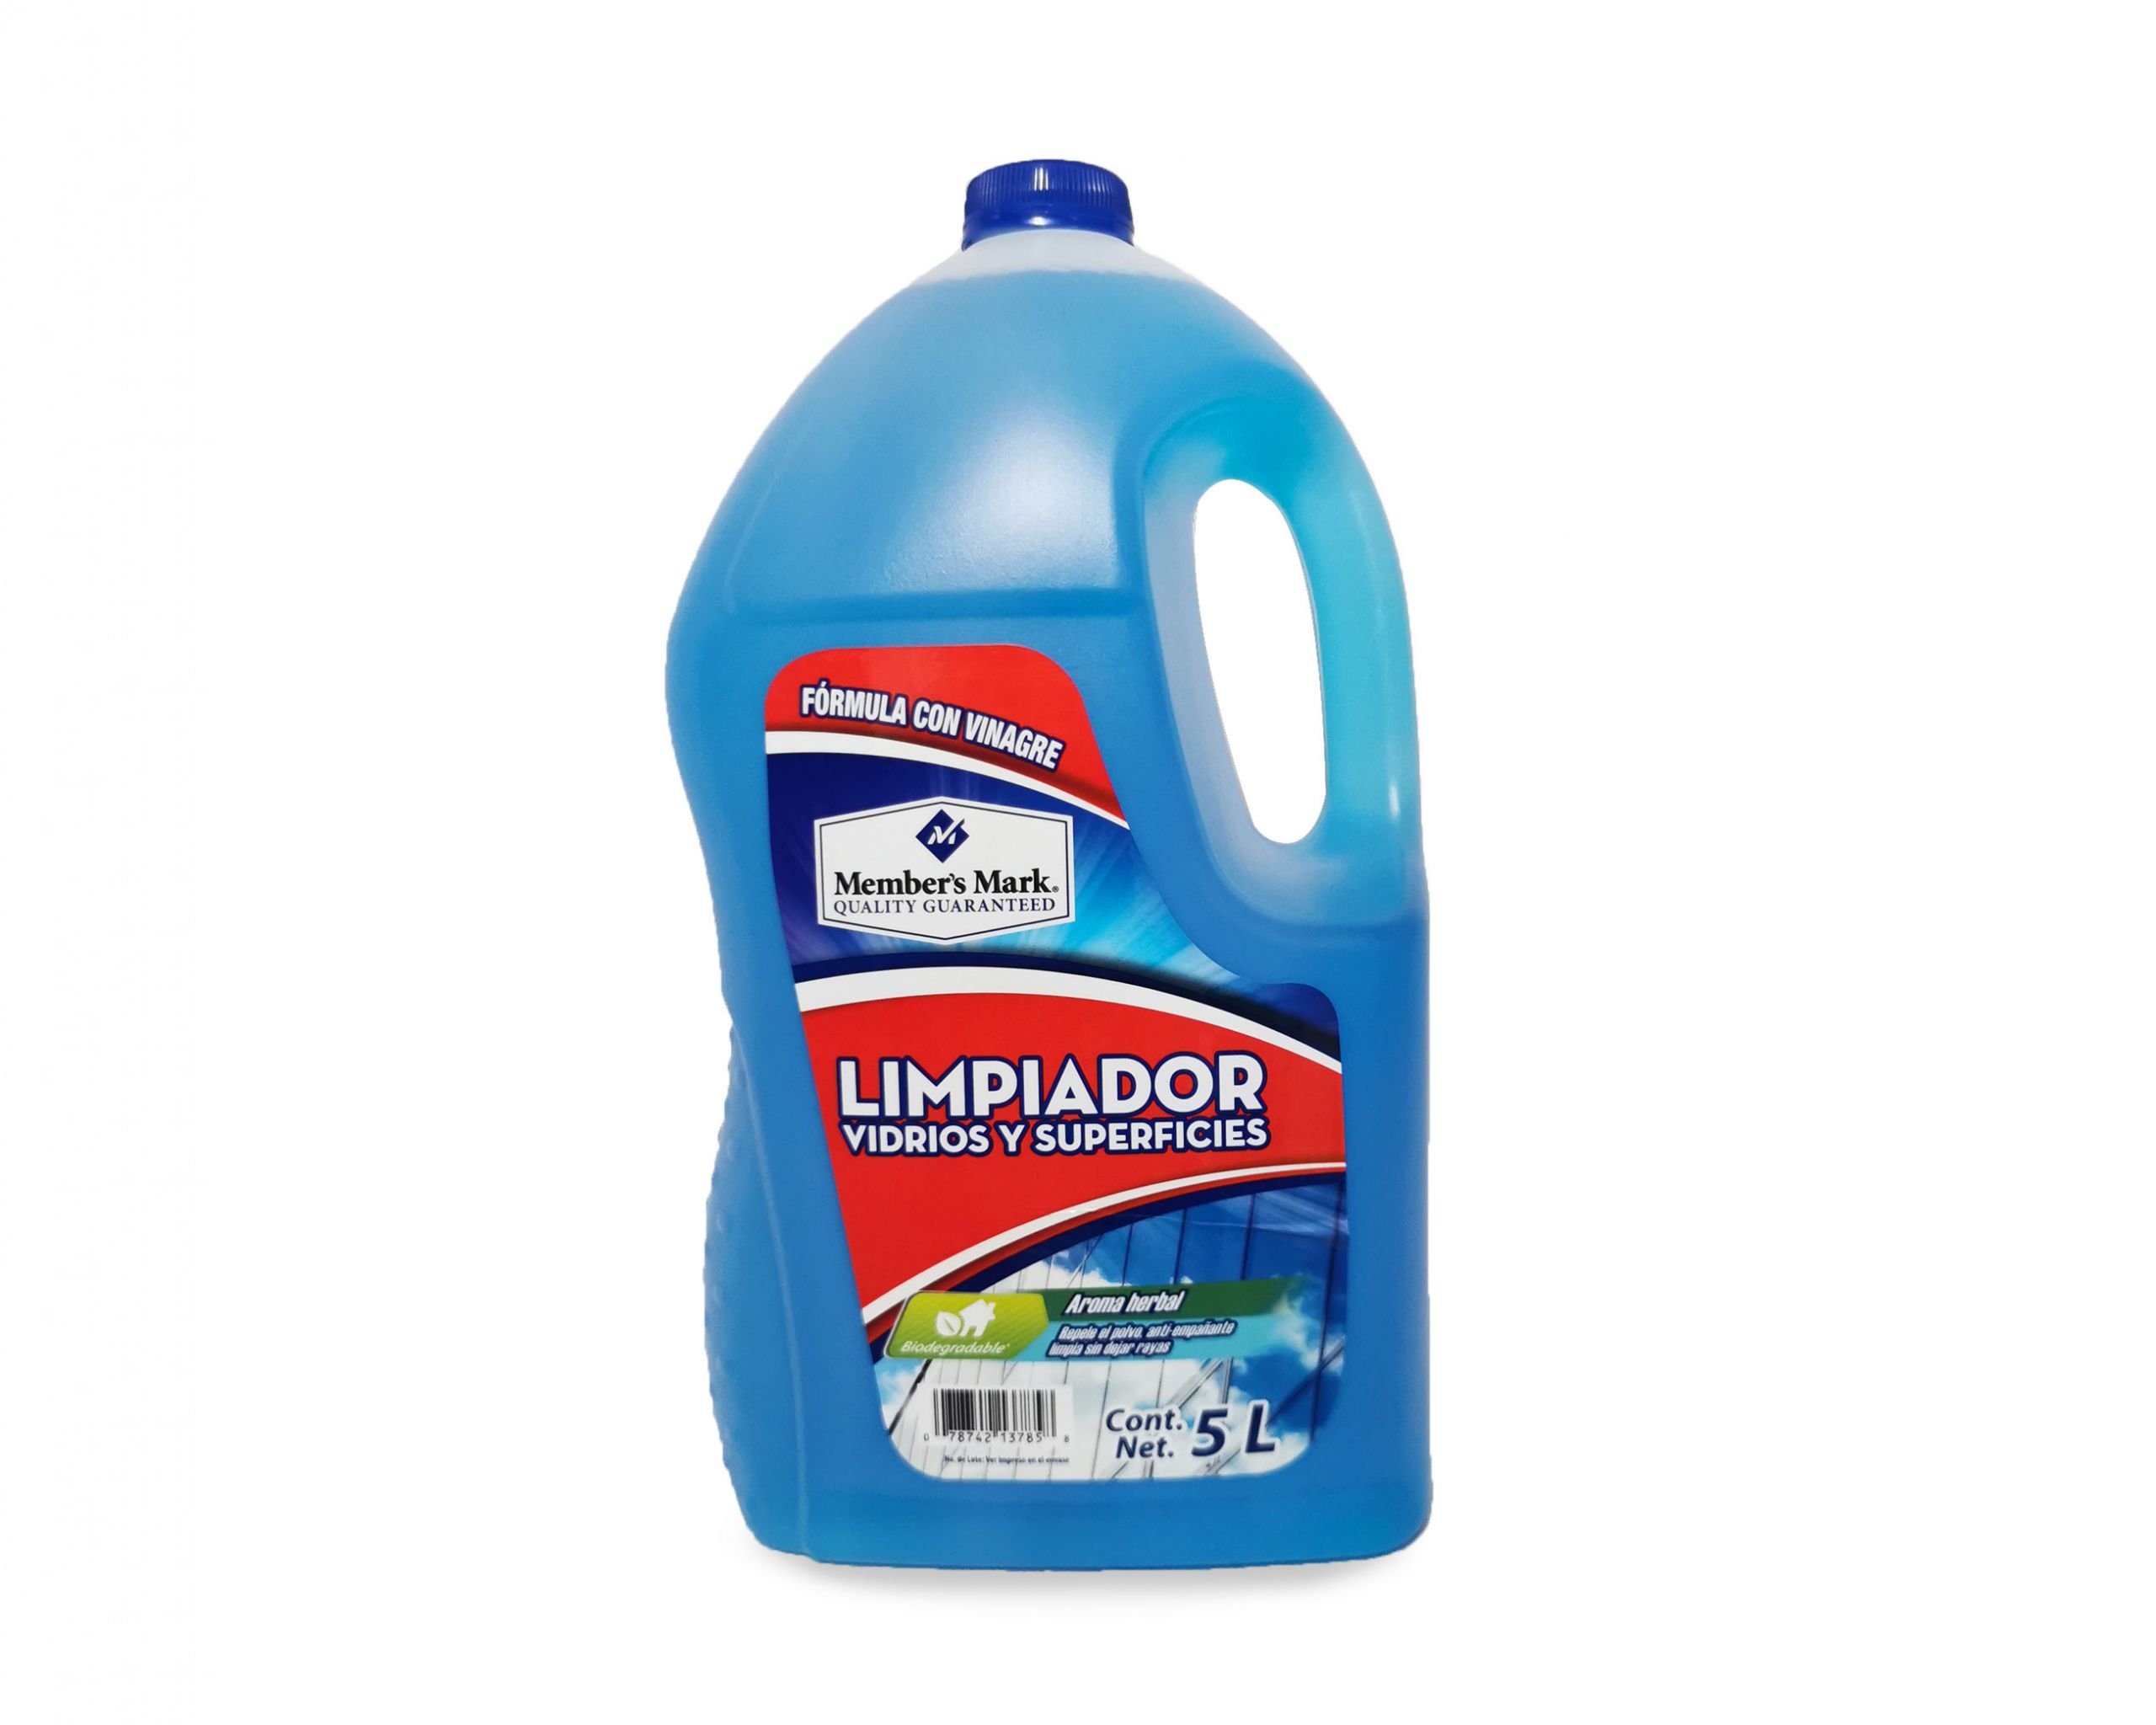 Mr. Cleaner - ¡𝐋𝐢𝐦𝐩𝐢𝐞𝐳𝐚 𝐝𝐞 𝐕𝐢𝐝𝐫𝐢𝐨𝐬! ✓Nuestro  #LimpiaVidrios, te brinda una eficaz solución al momento de limpiar tus  ventanas, espejos, cristales, mamparas y demás superficies lavables. ➡Para  mayor información o realizar un